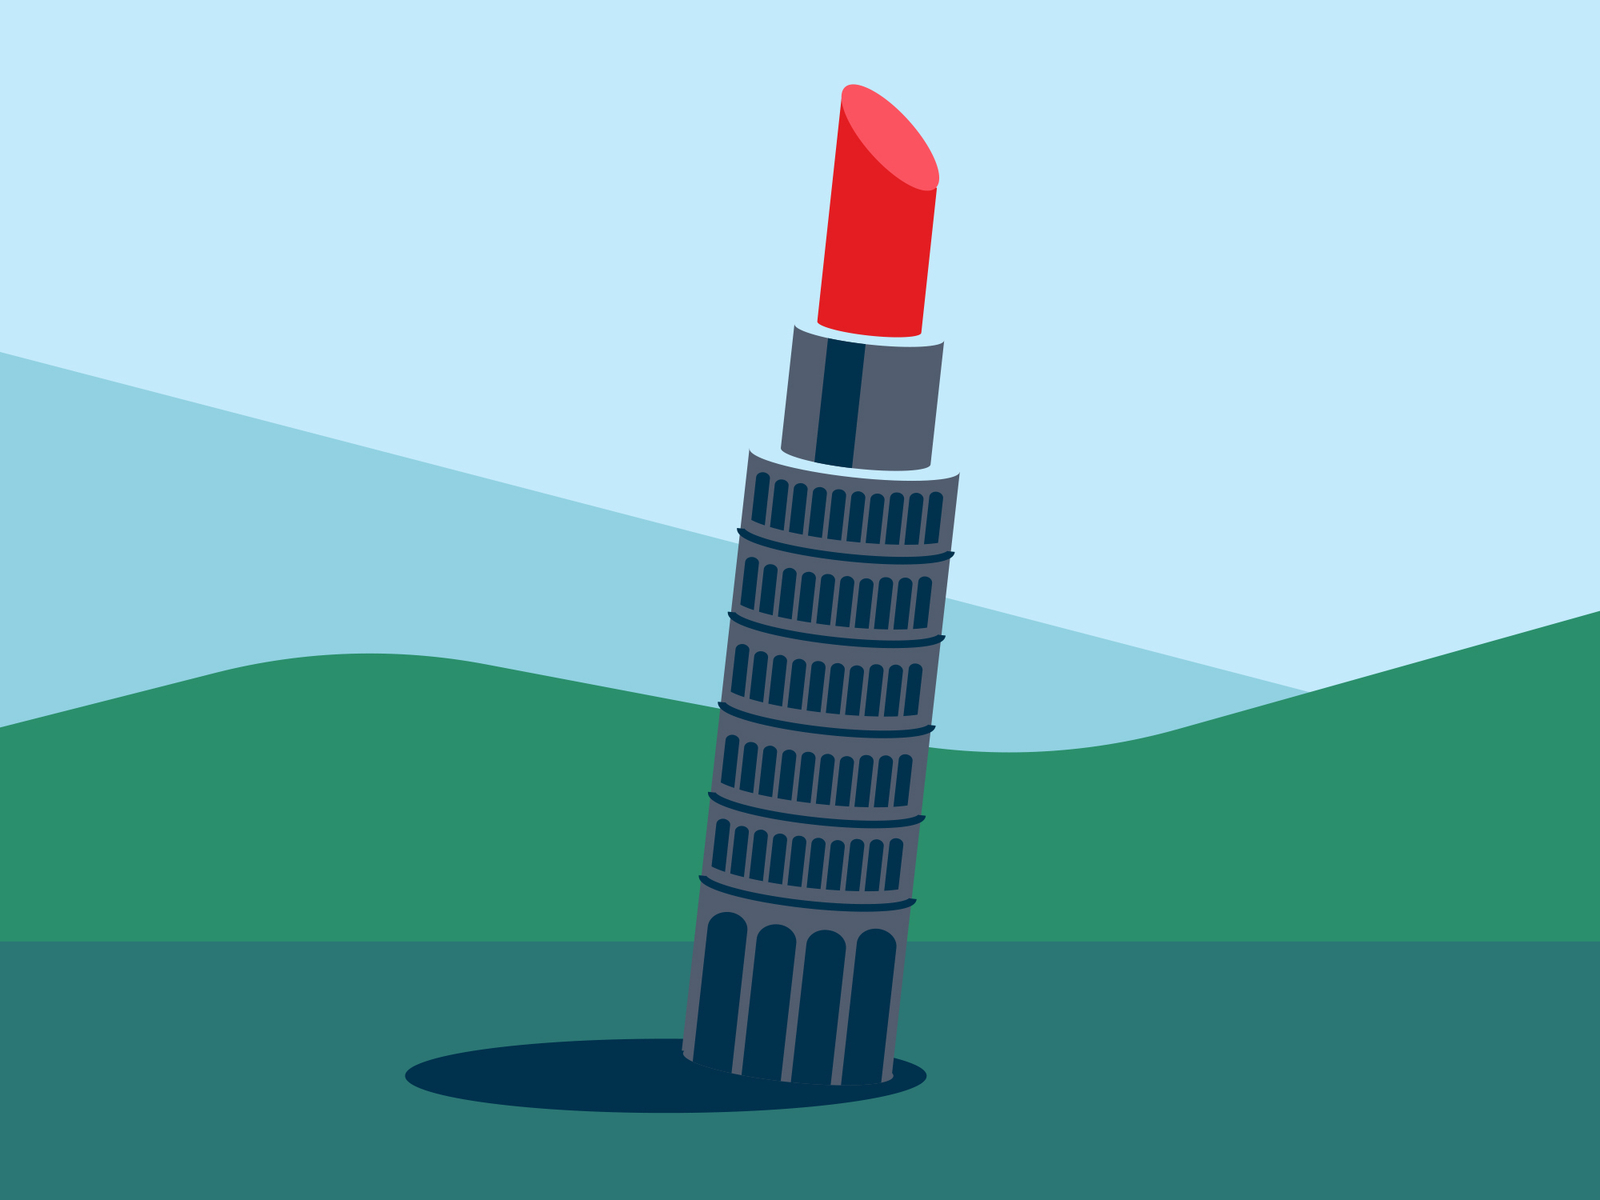 torre di Pisa fun illustration italy minimalist pisa pisa tower tour de pise